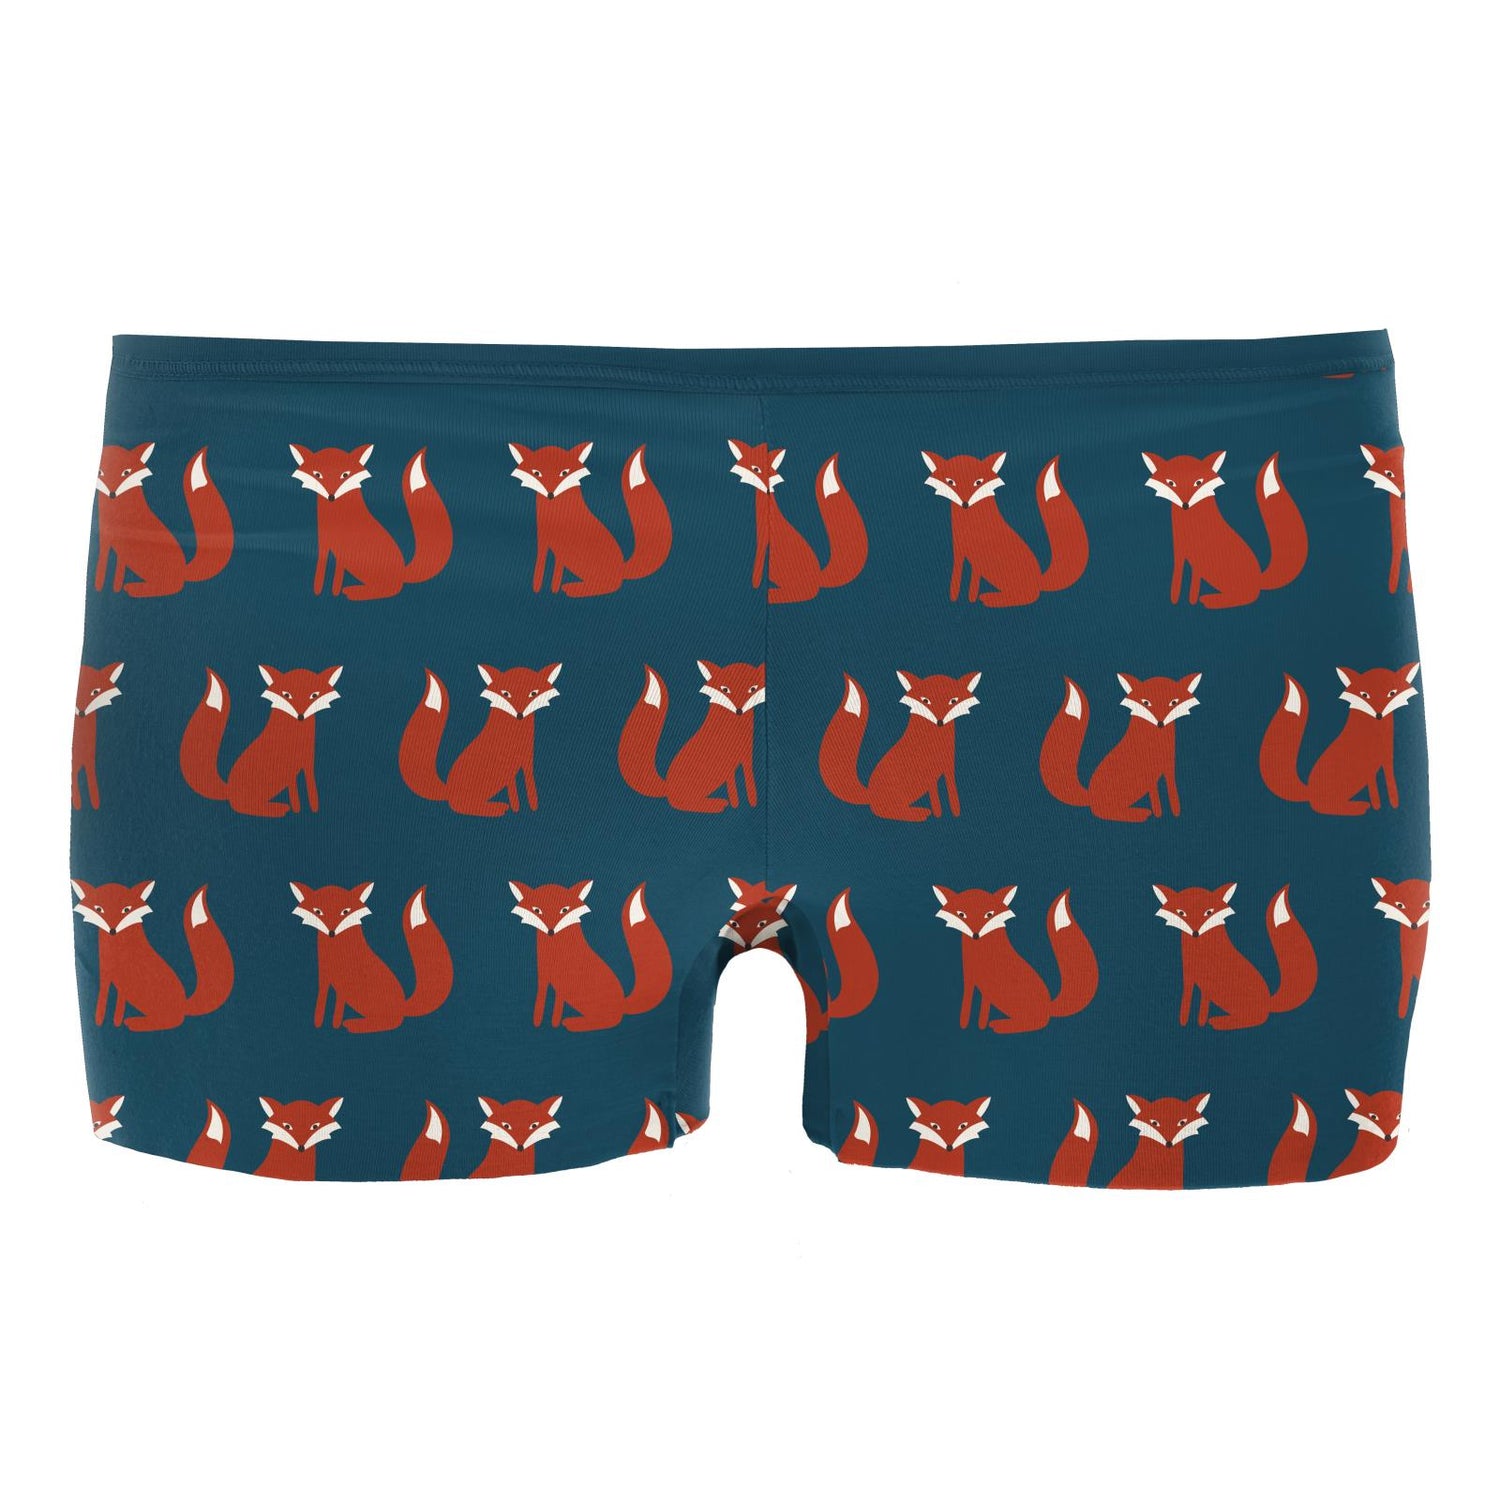 Women's Print Boy Short Underwear in Peacock Fox